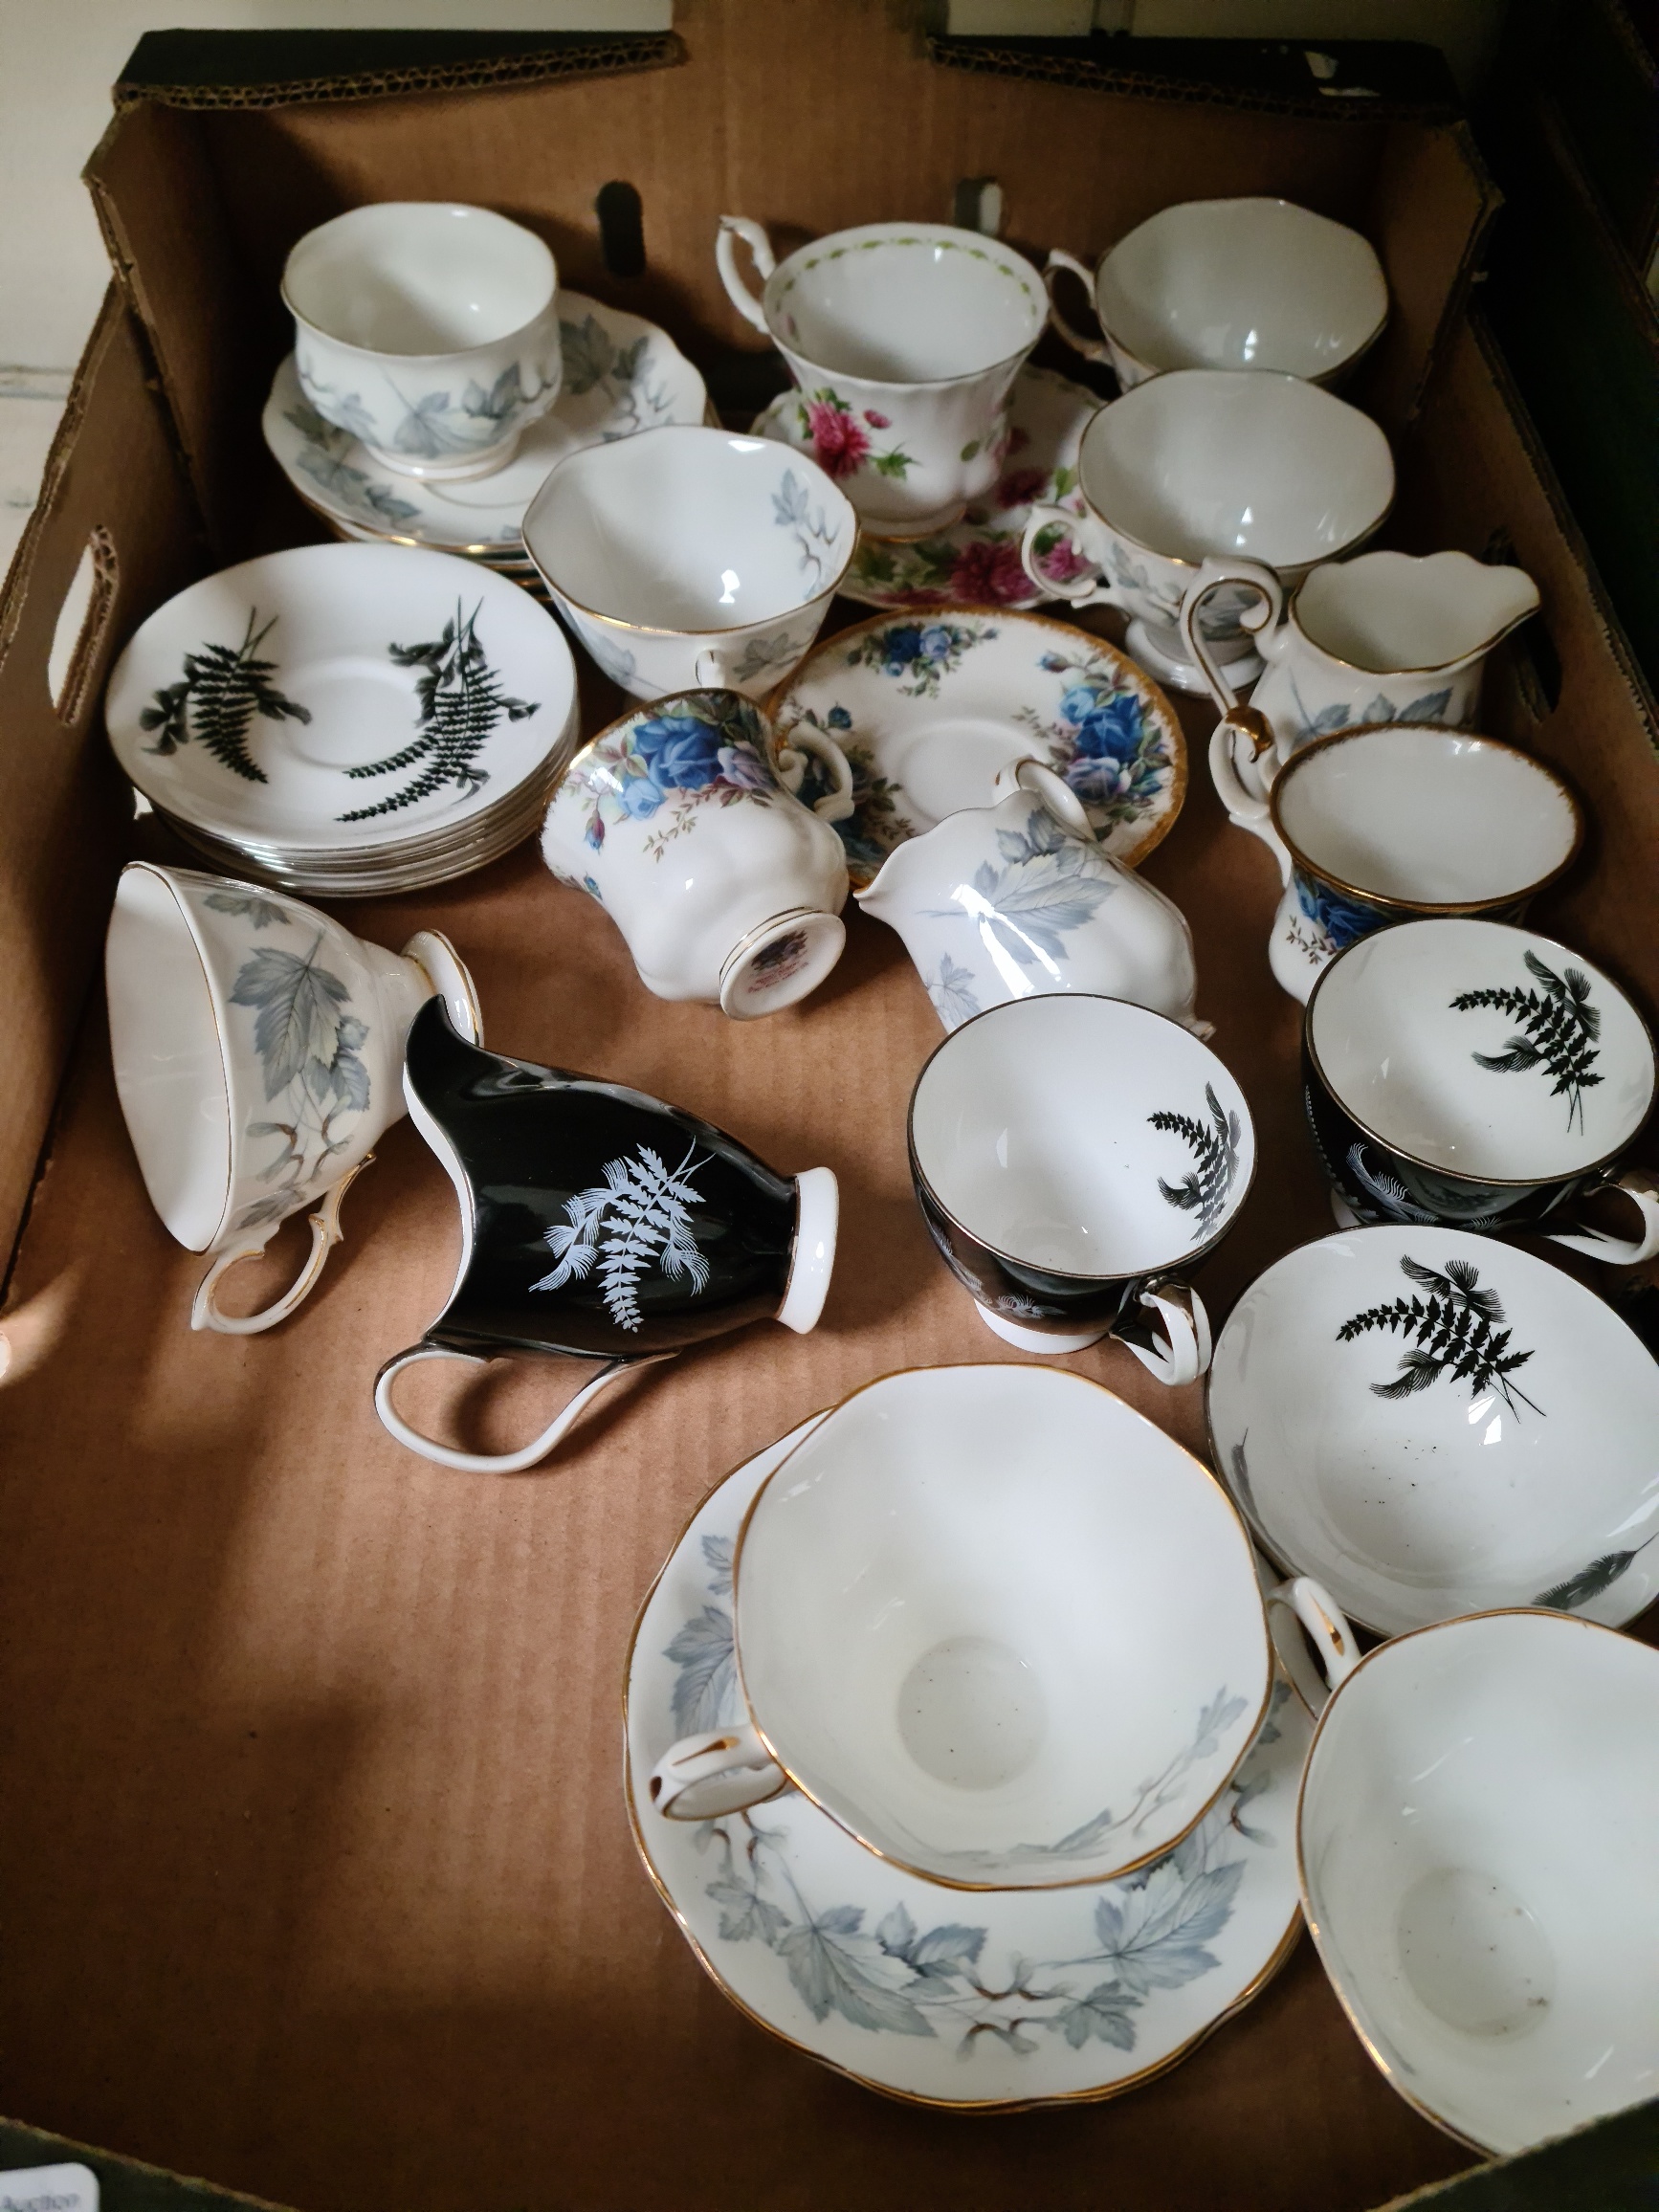 Assorted Royal tea wares, various patterns.